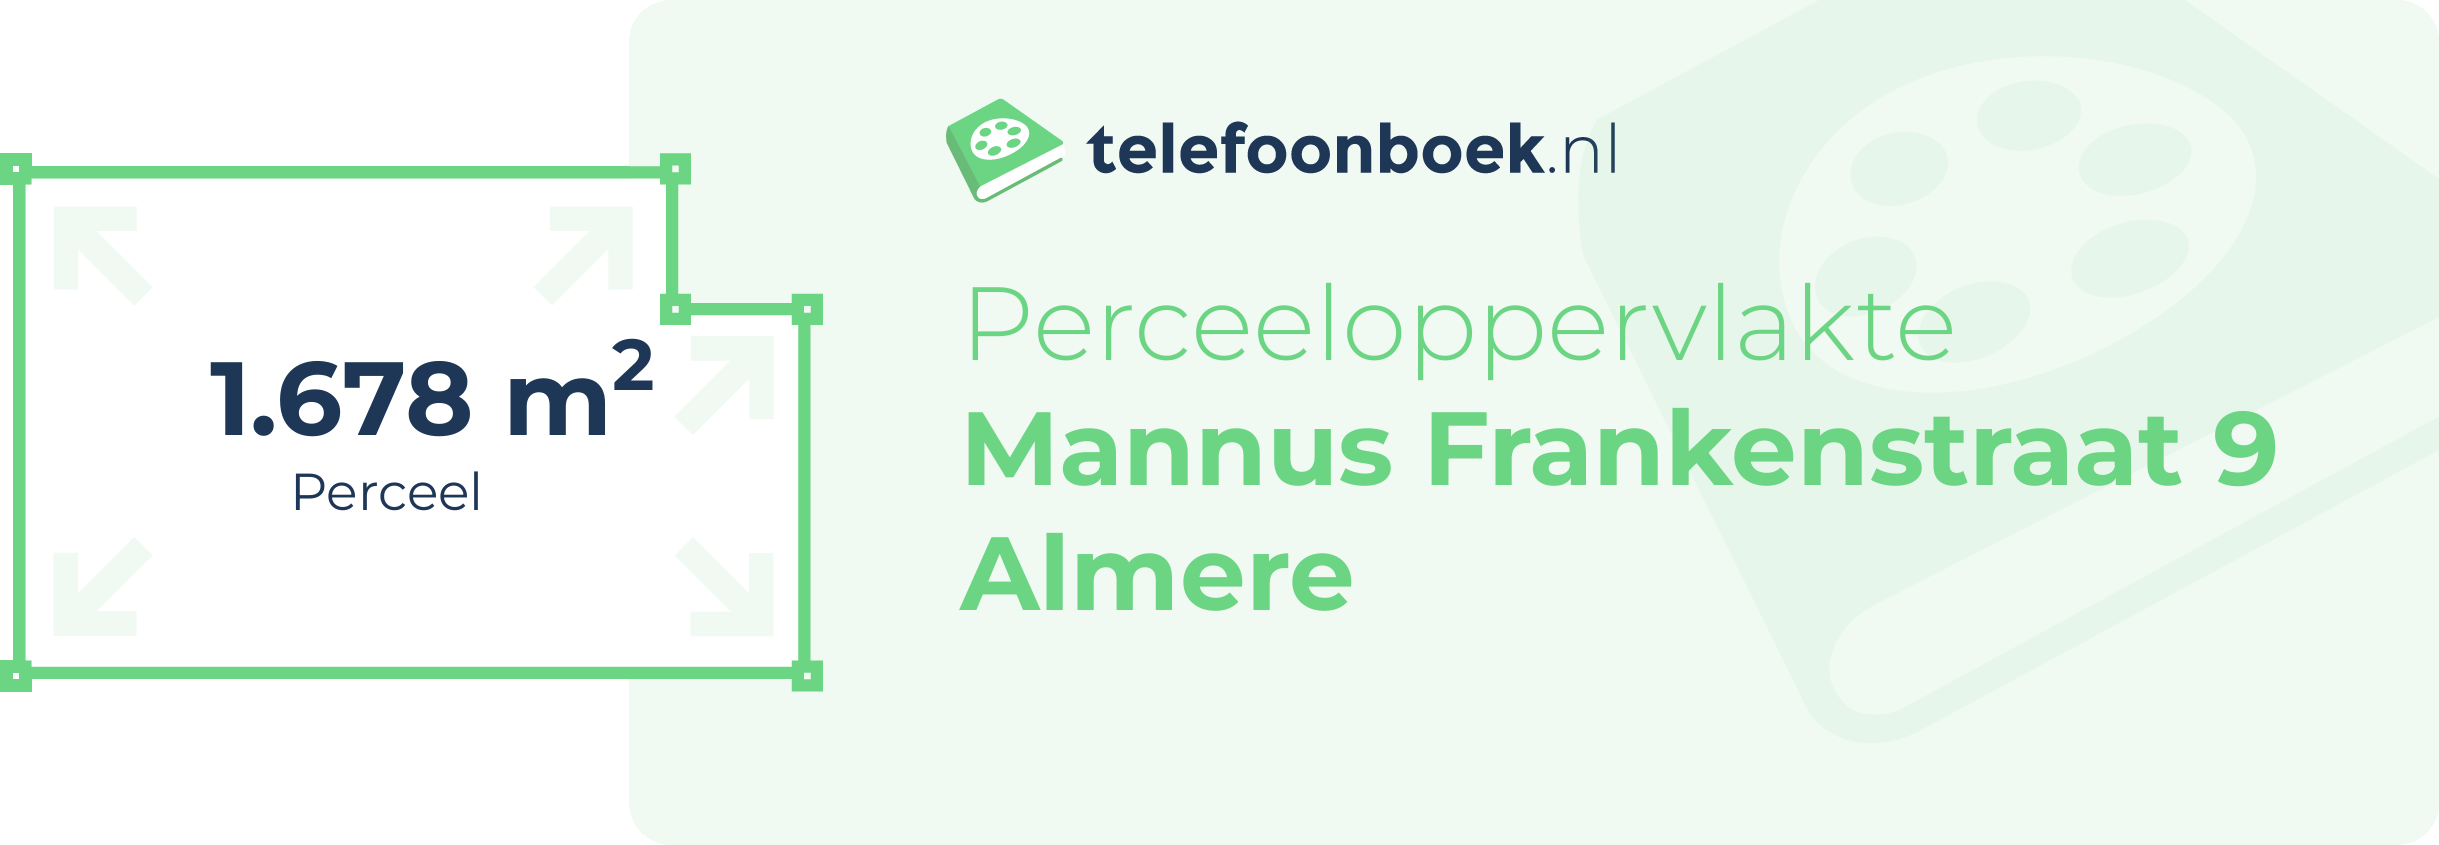 Perceeloppervlakte Mannus Frankenstraat 9 Almere